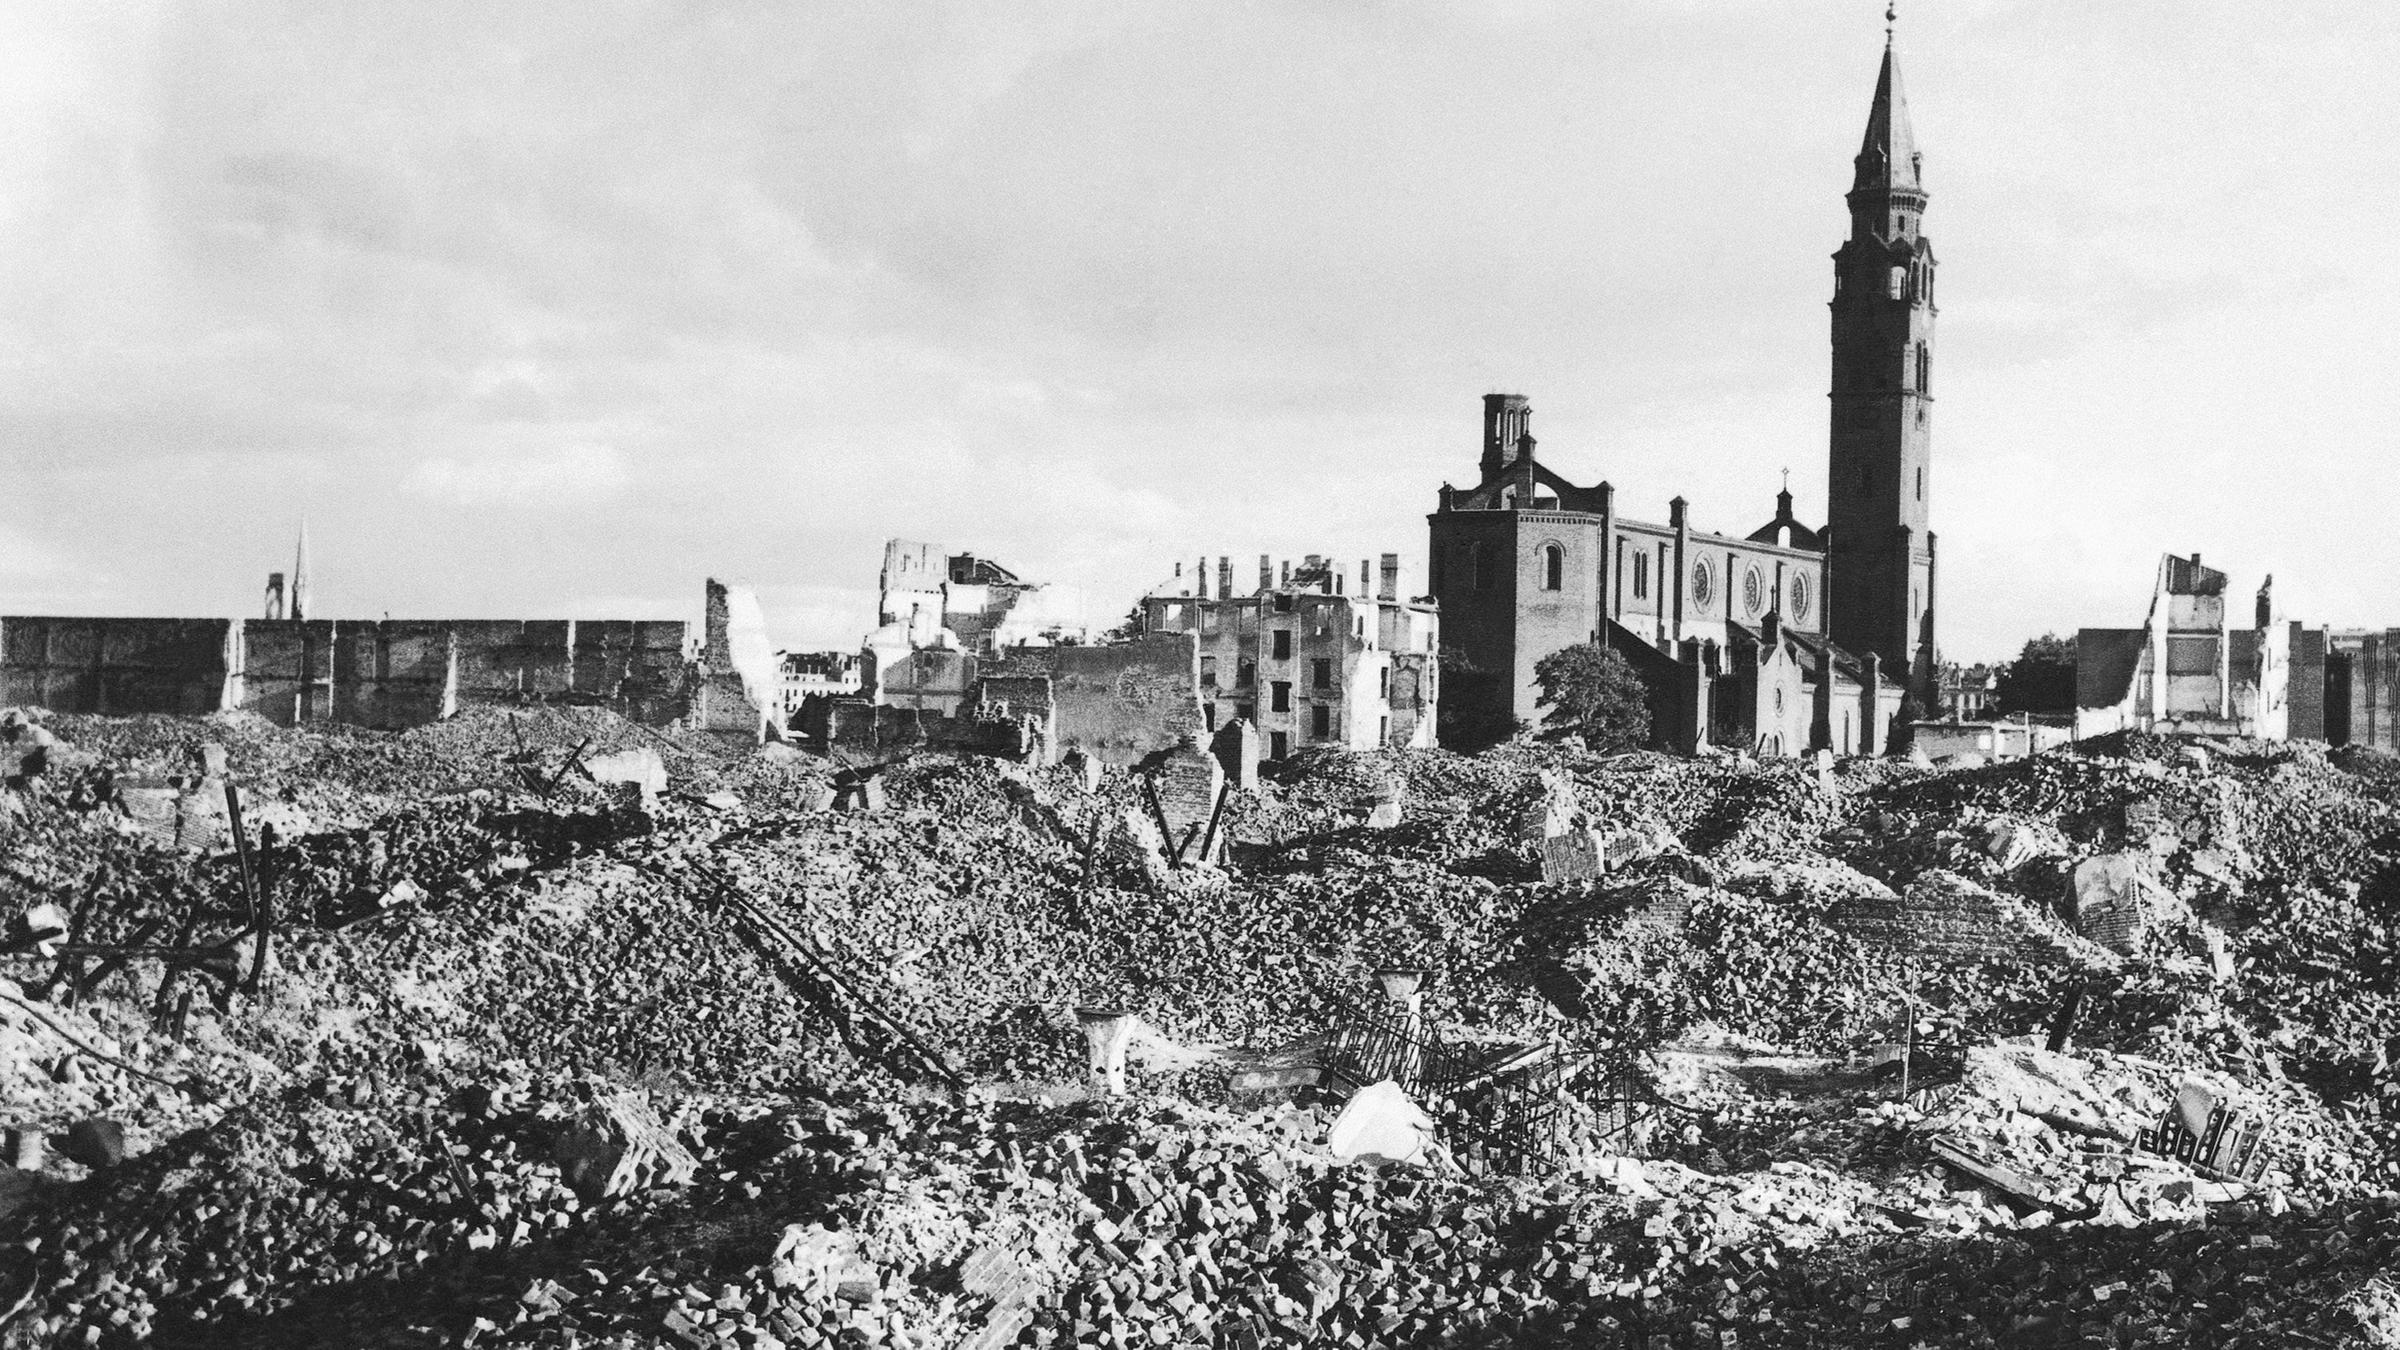 Zerstörung in Warschau nach dem Zweiten Weltkrieg, Schwarz-Weiß-Aufnahme